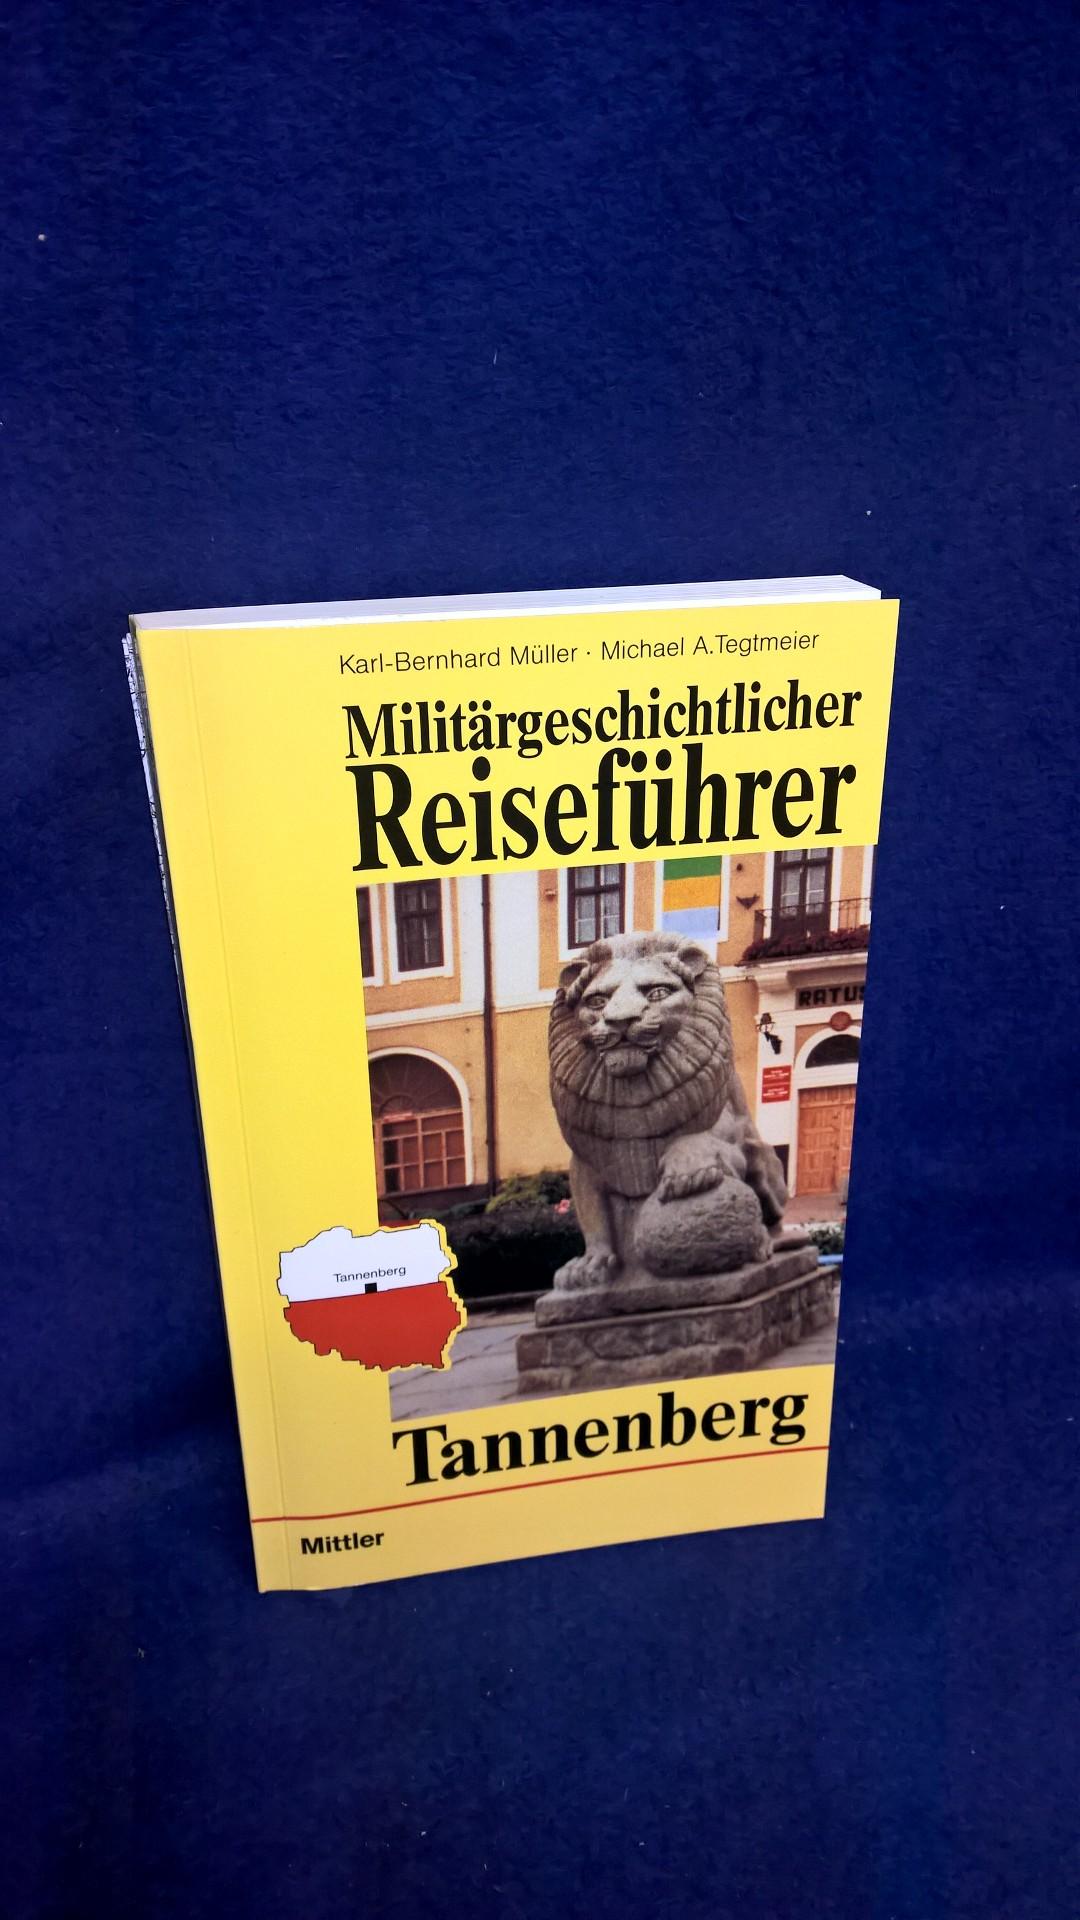 Militärgeschichtlicher Reiseführer Tannenberg.